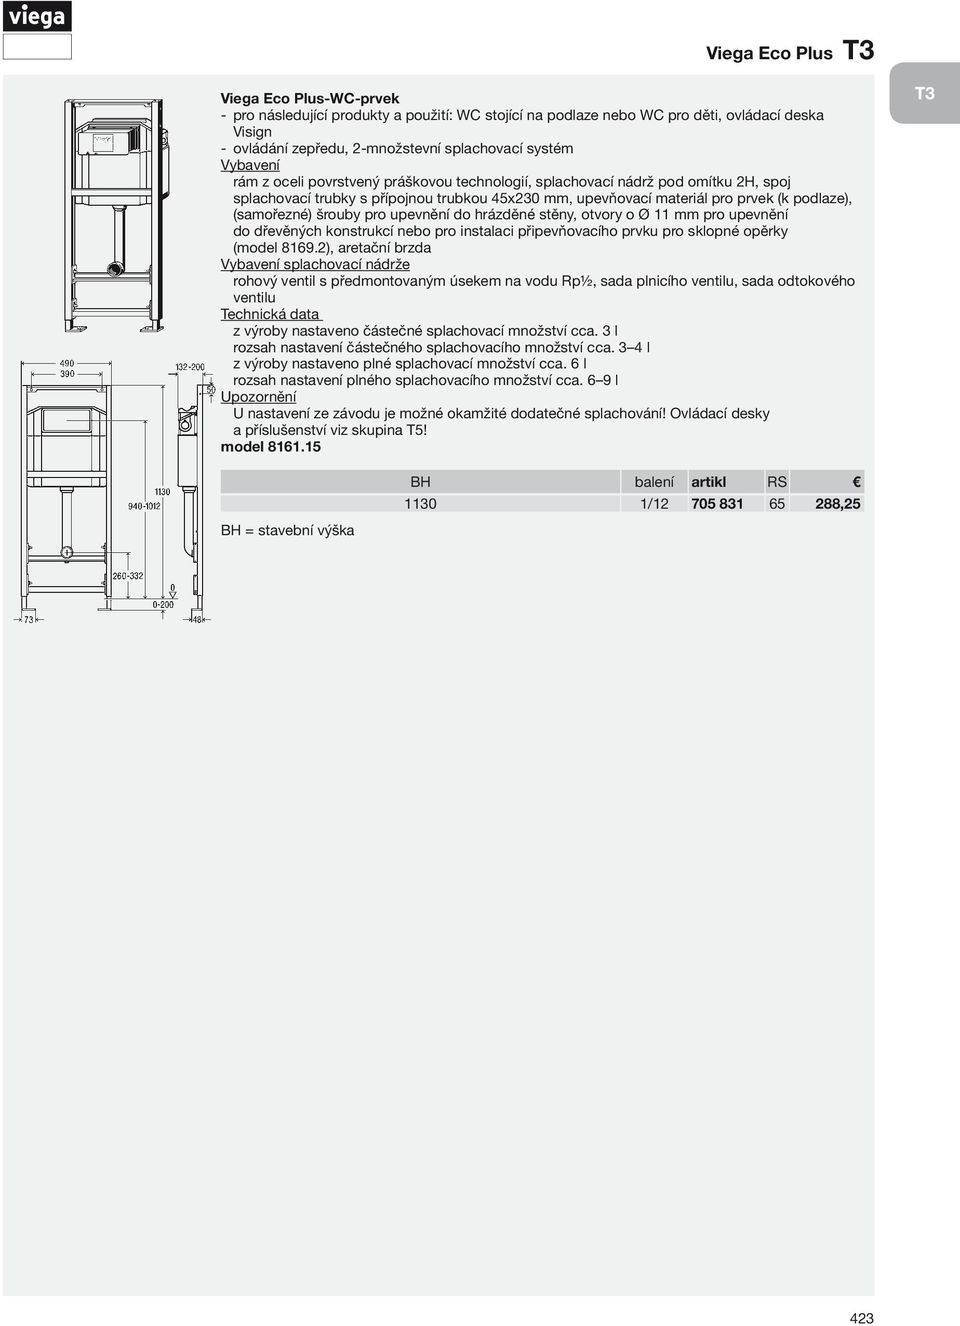 upevnění do hrázděné stěny, otvory o Ø 11 mm pro upevnění do dřevěných konstrukcí nebo pro instalaci připevňovacího prvku pro sklopné opěrky (model 8169.